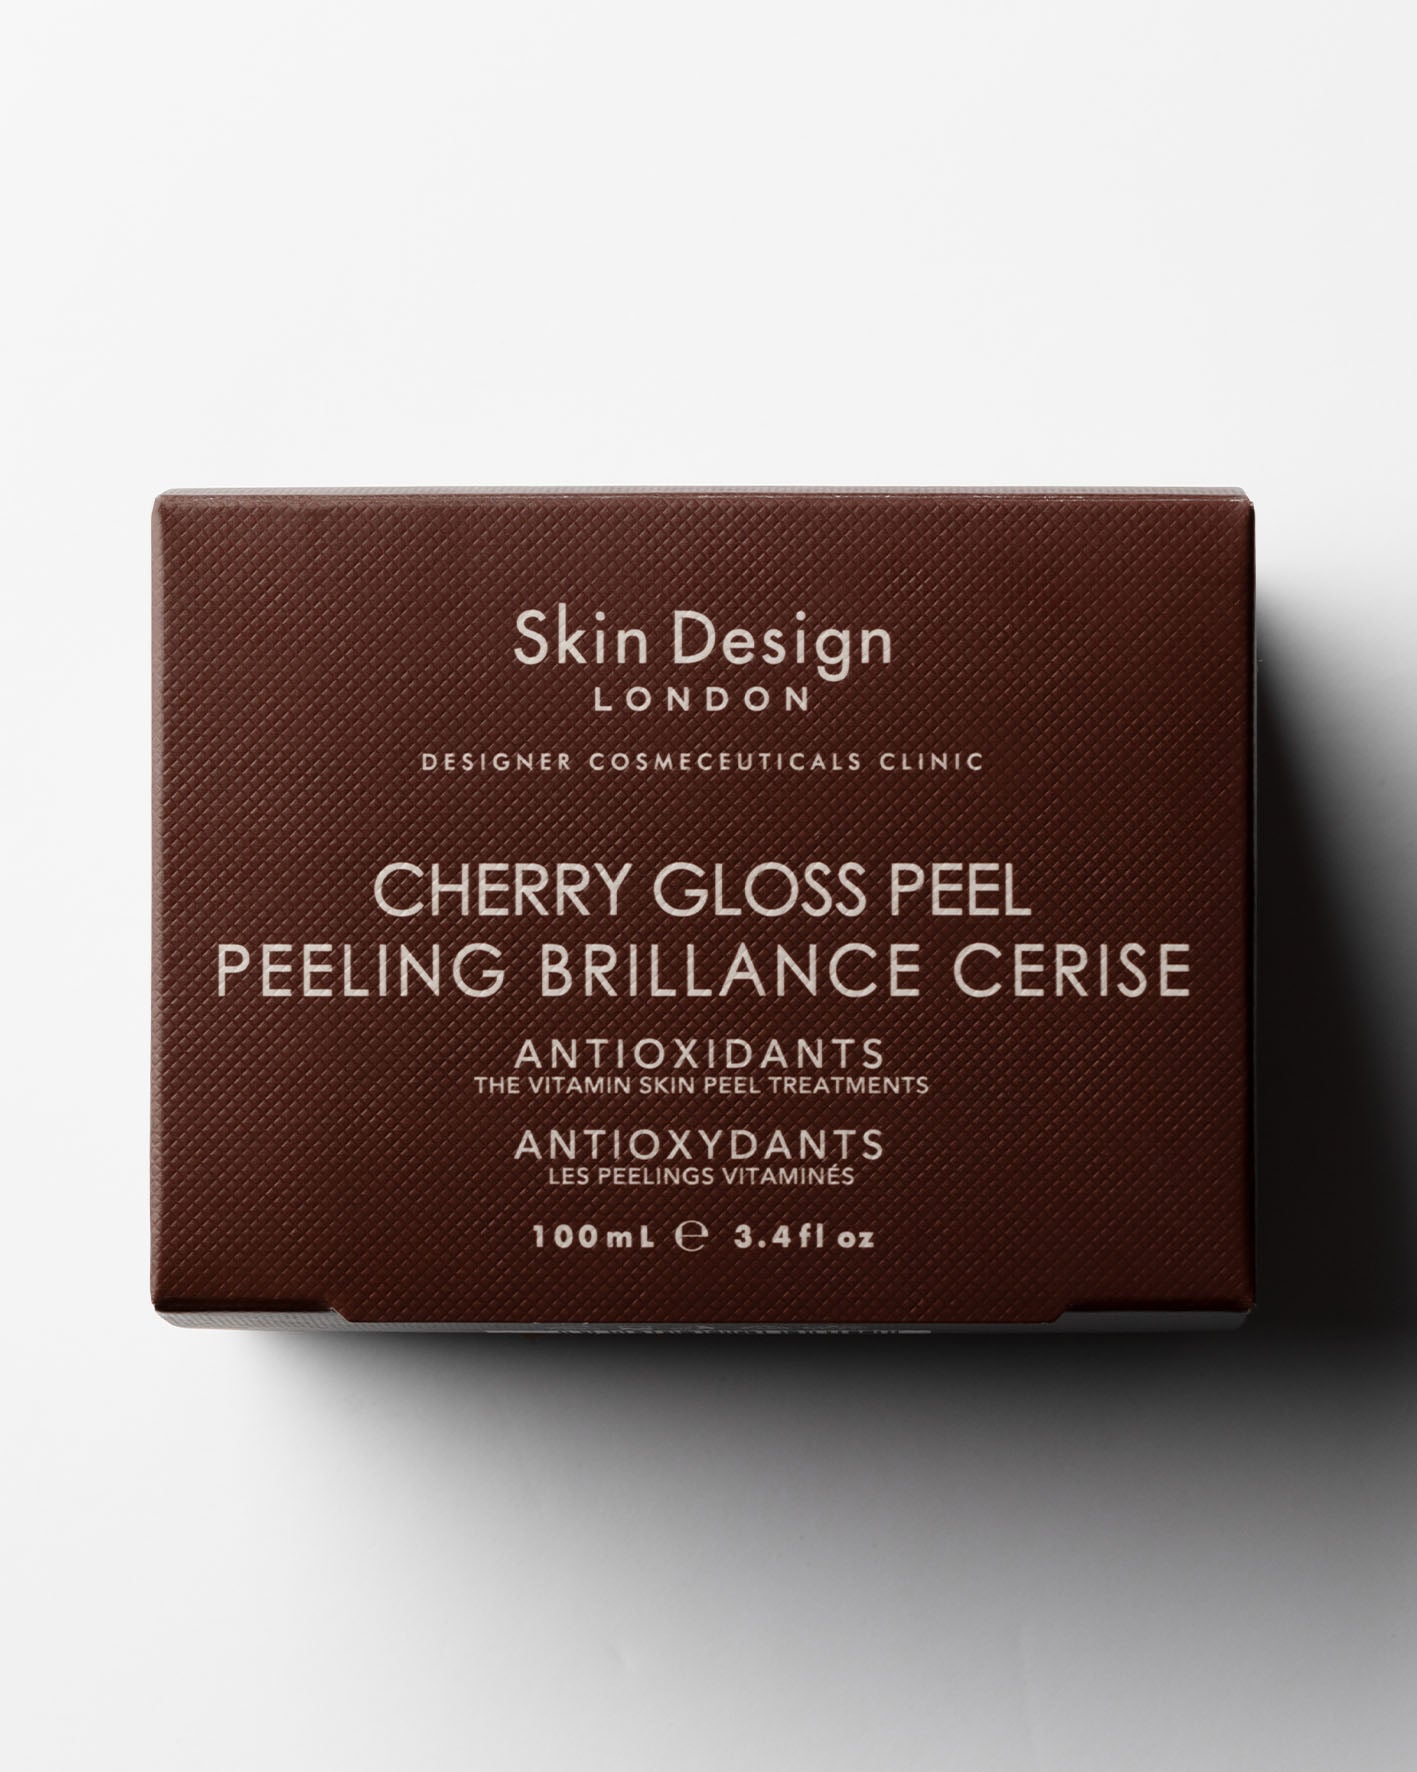 Cherry Gloss Peel